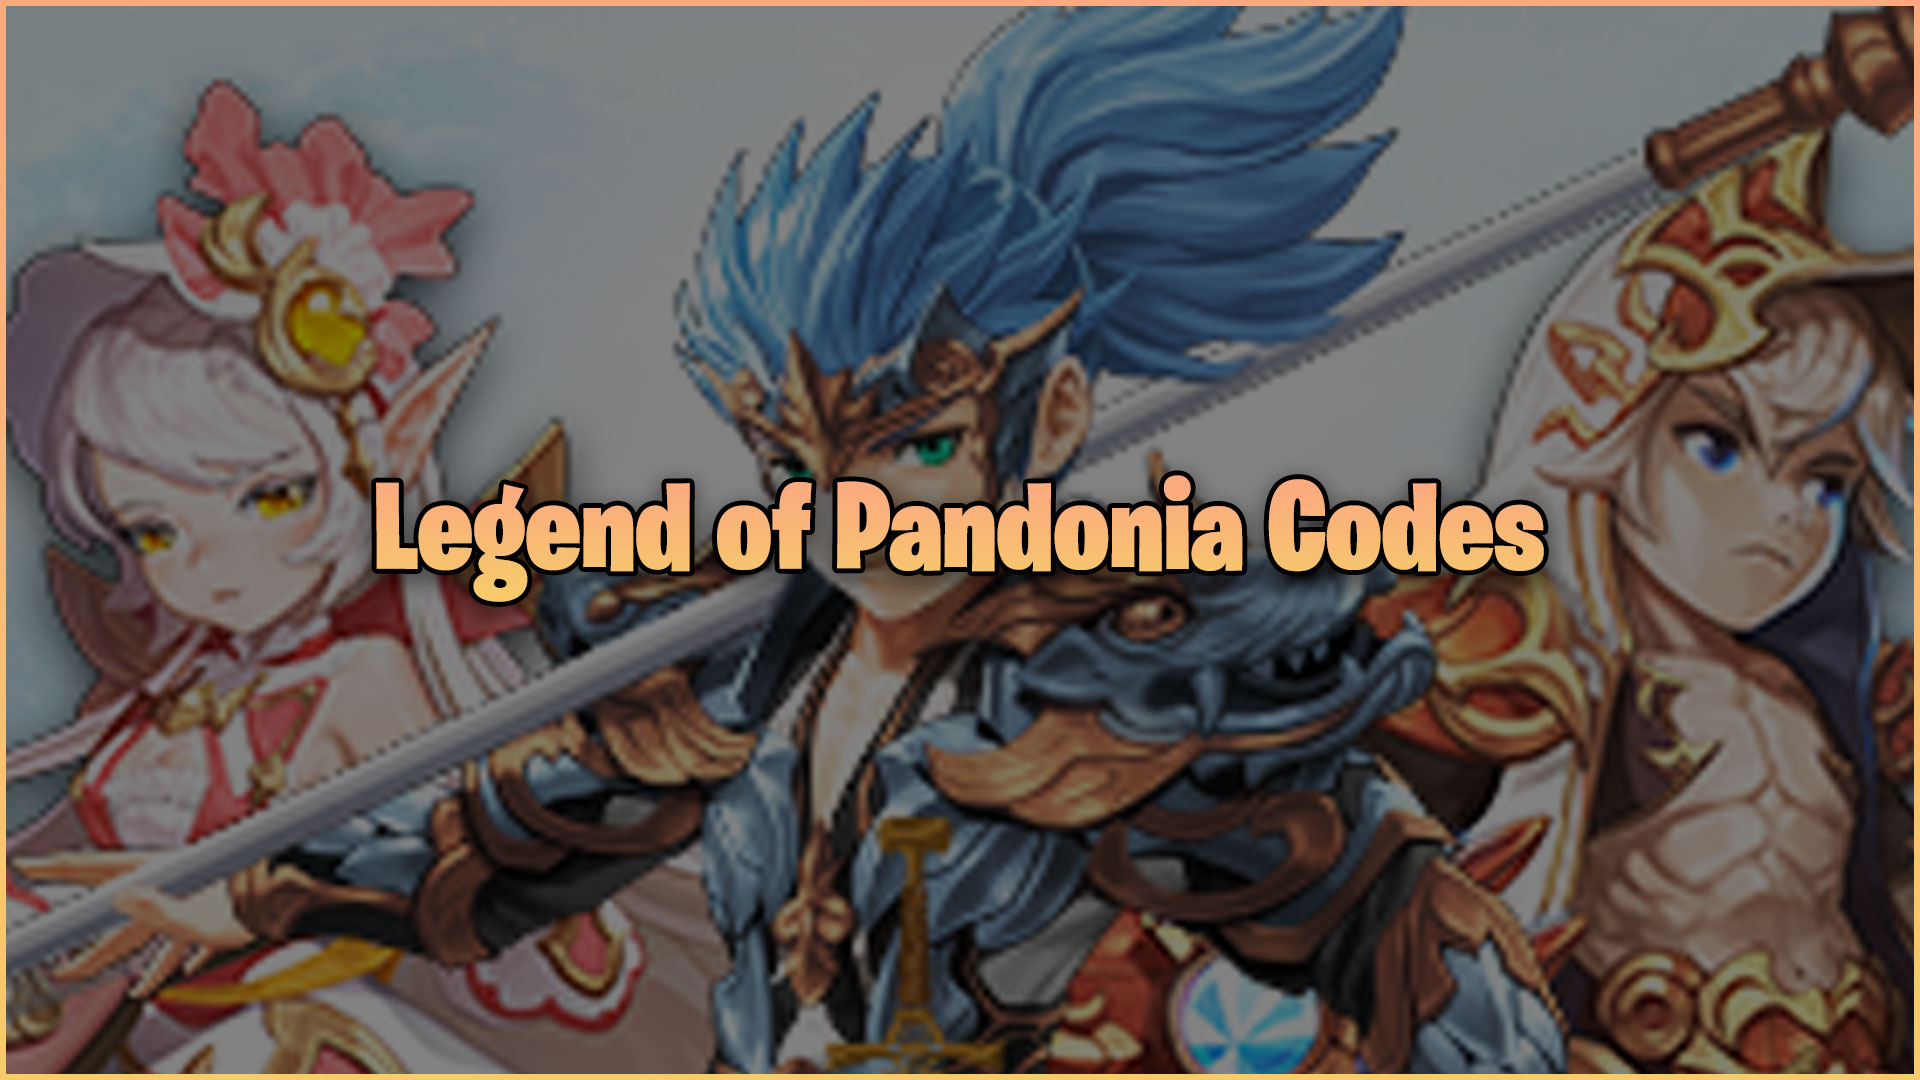 Légende des codes de Pandonia